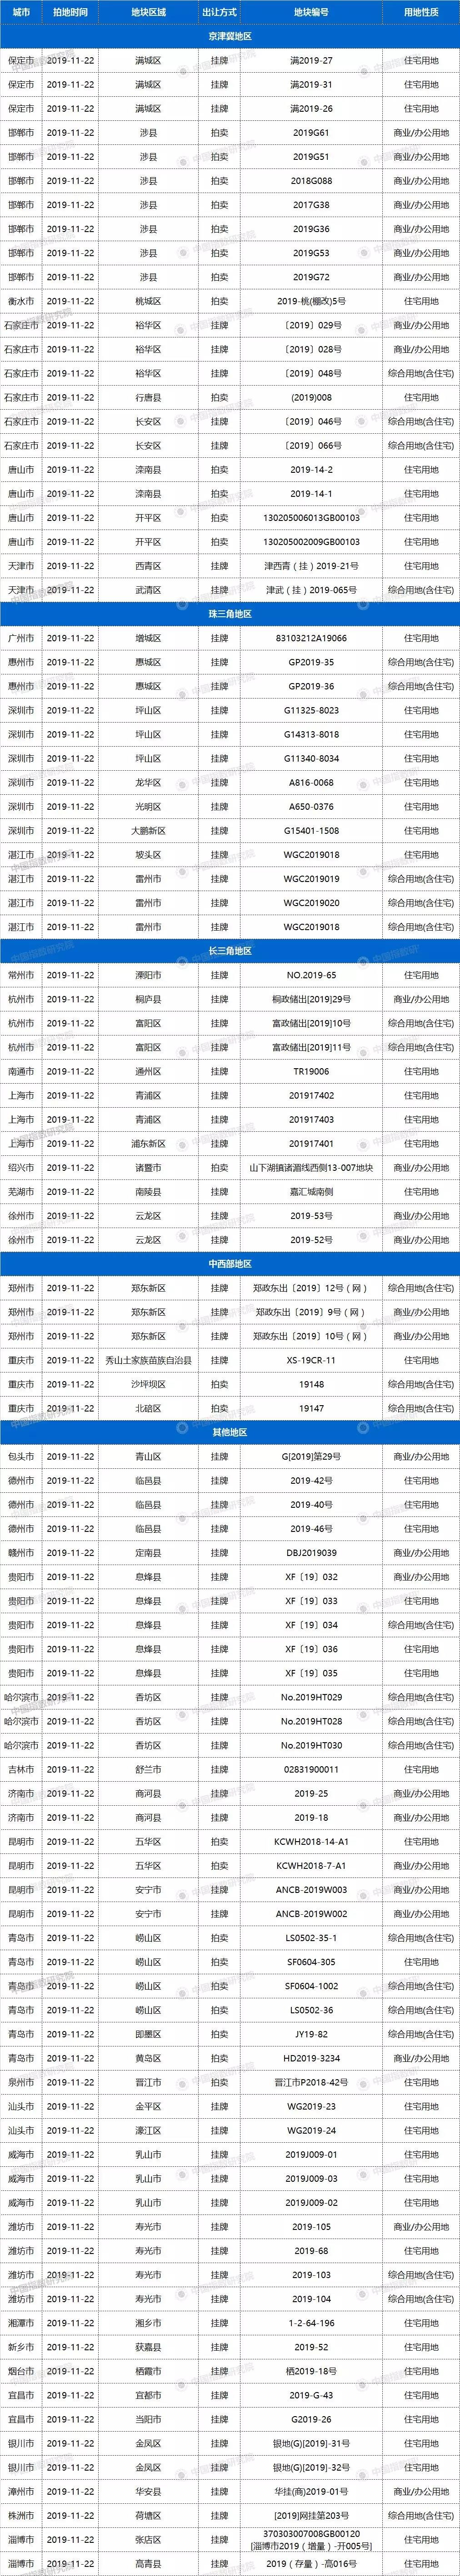 土拍预告 | 11月22日38城99宗地块出让，深圳6宗宅地131.67亿起拍